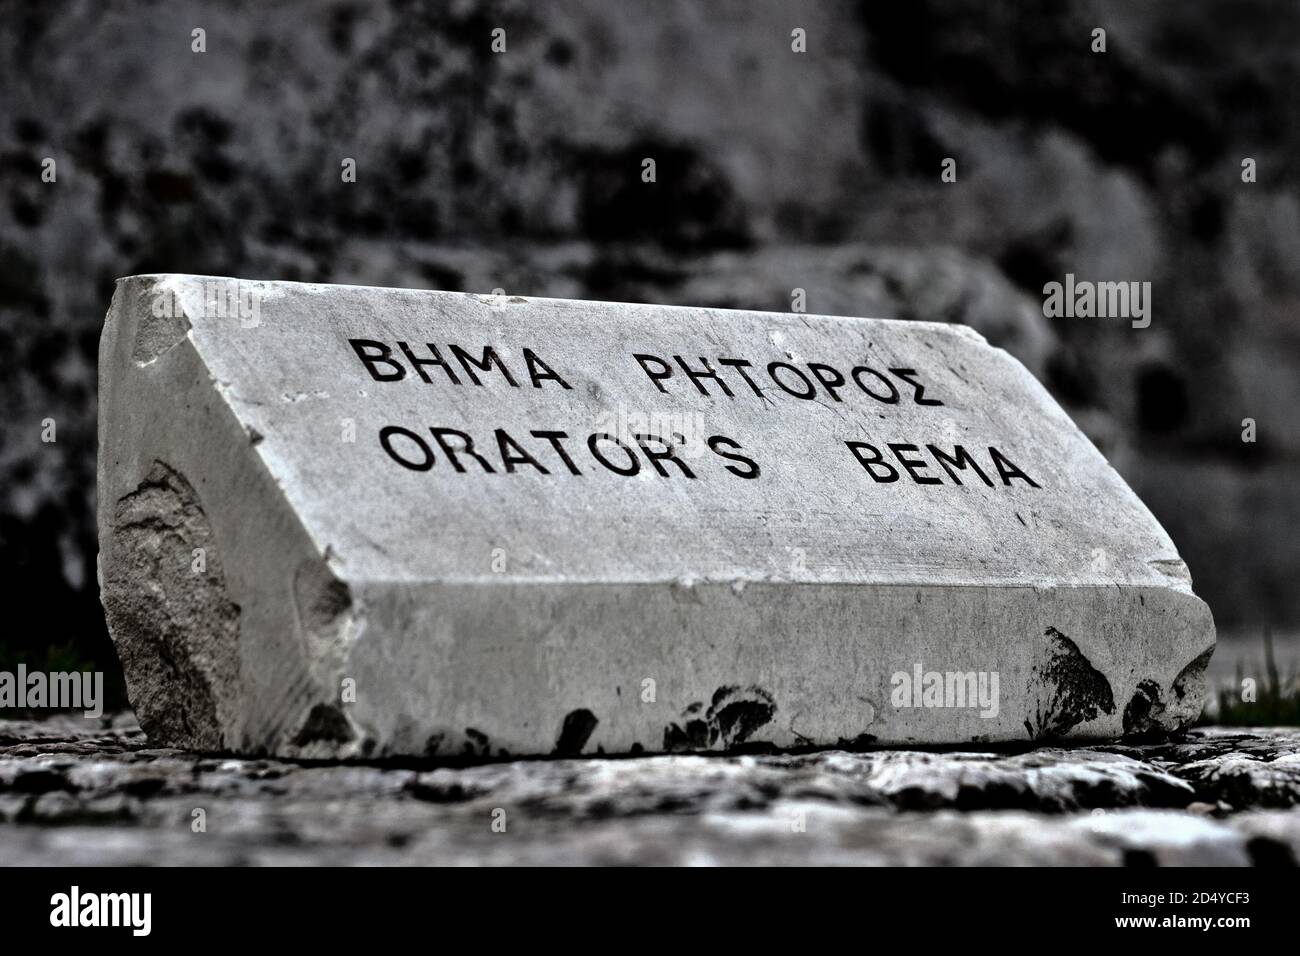 ATENE, GRECIA - Feb 05, 2012: Bema orator's ad Atene, Pnyx. Il bema, o bima, è una piattaforma sopraelevata utilizzata come podio di un oratore nell'antica Atene Foto Stock